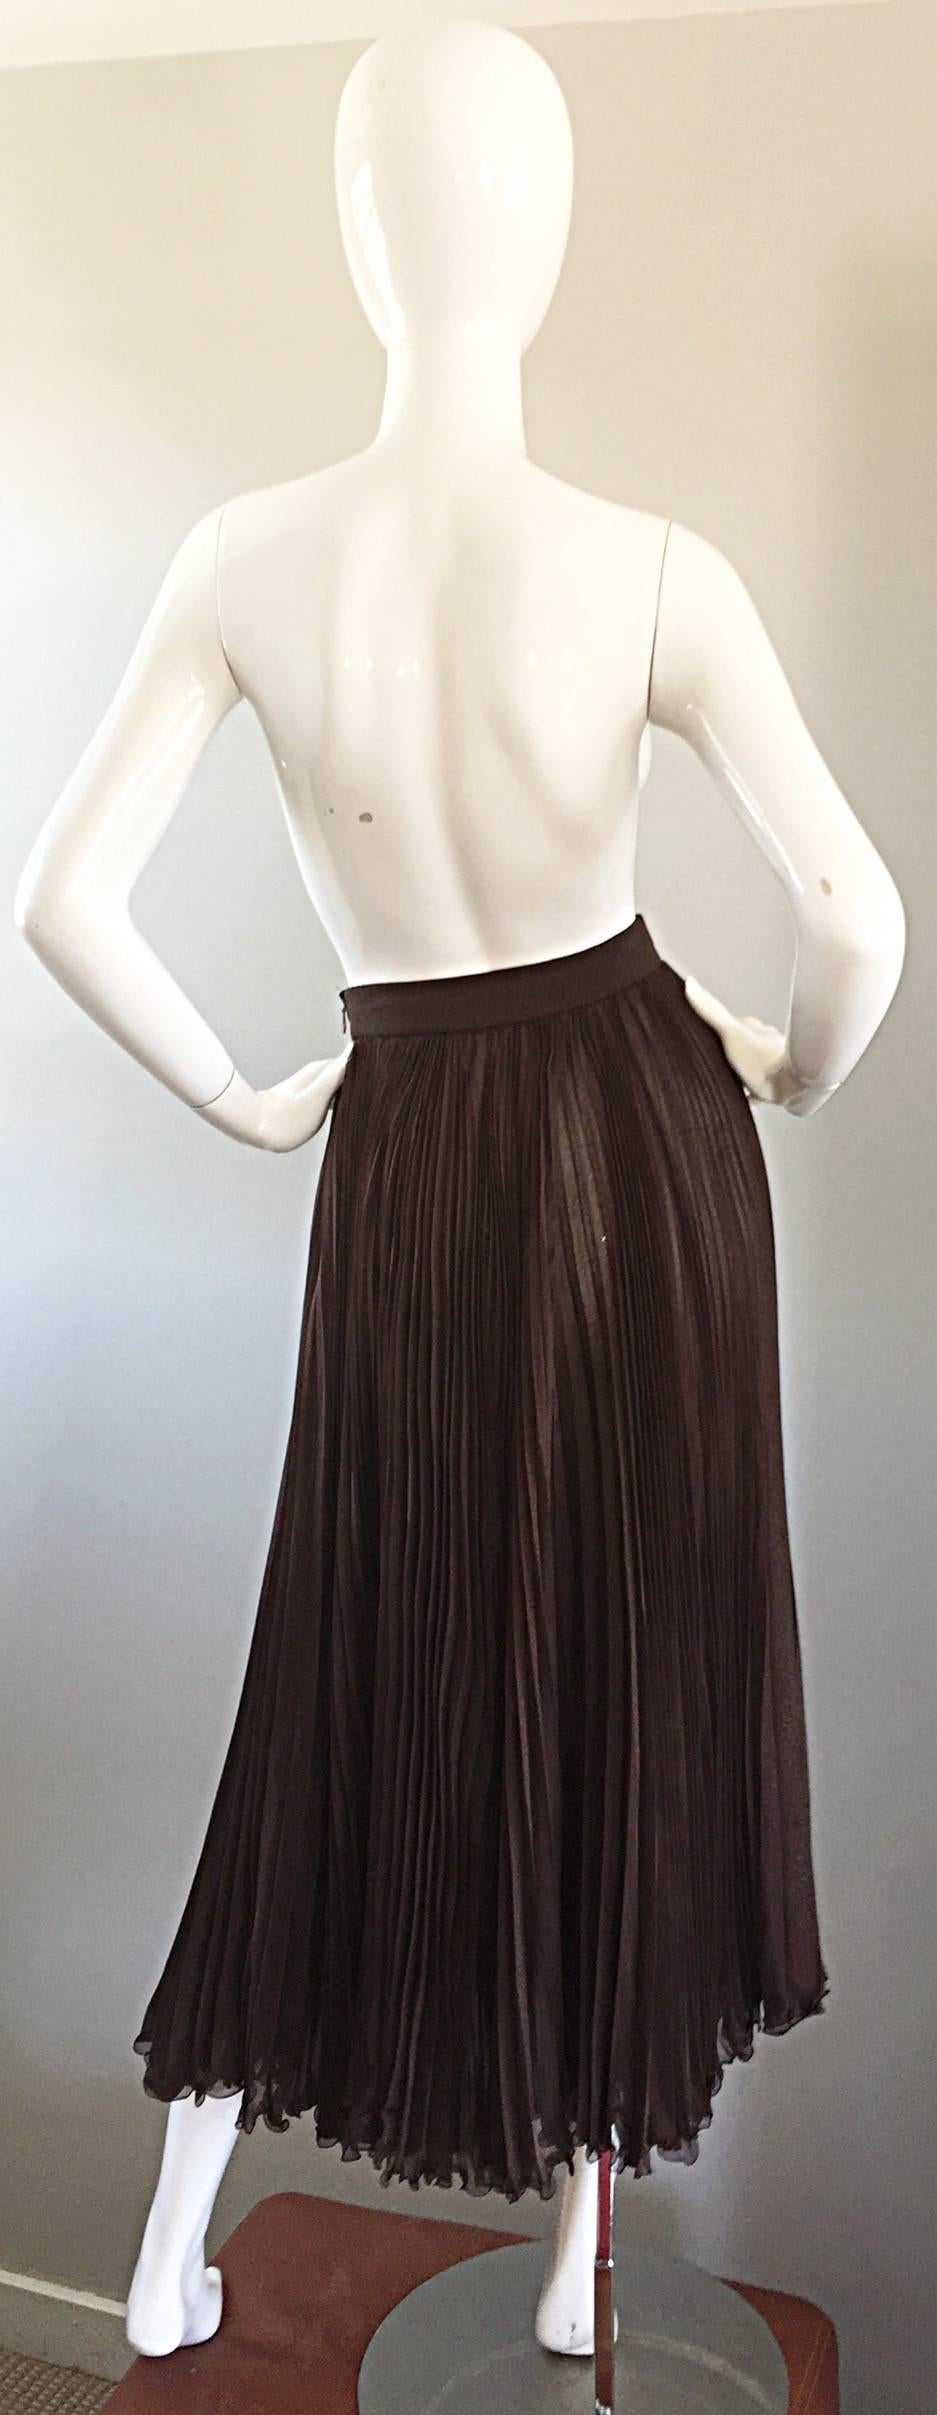 chocolate brown skirt